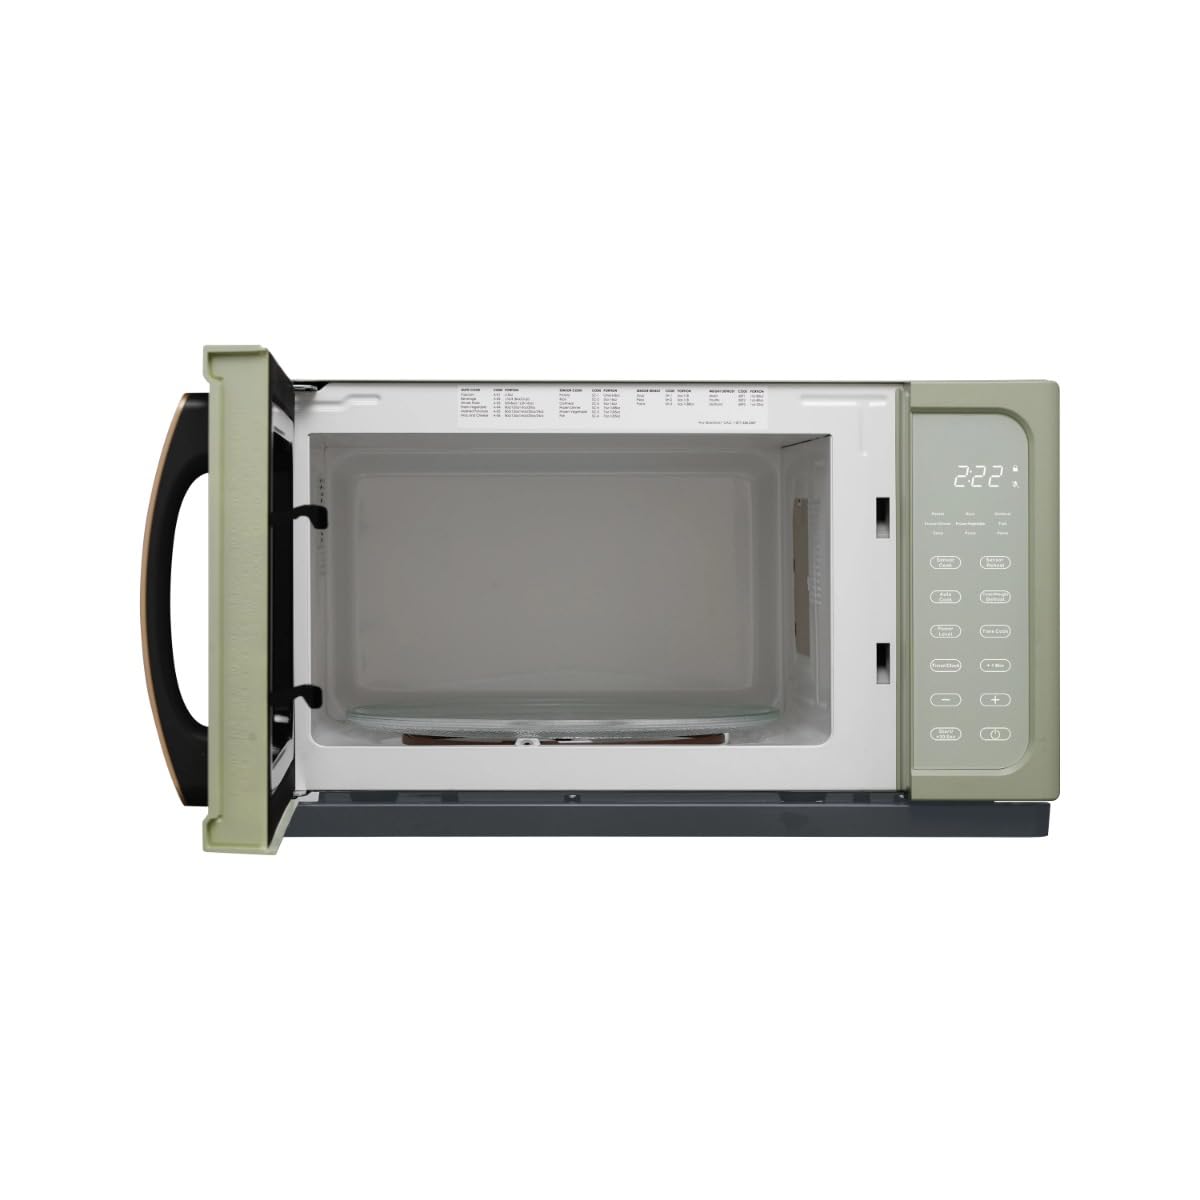 1.1 Cu ft 1000 Watt, Sensor Microwave Oven, Sage Green